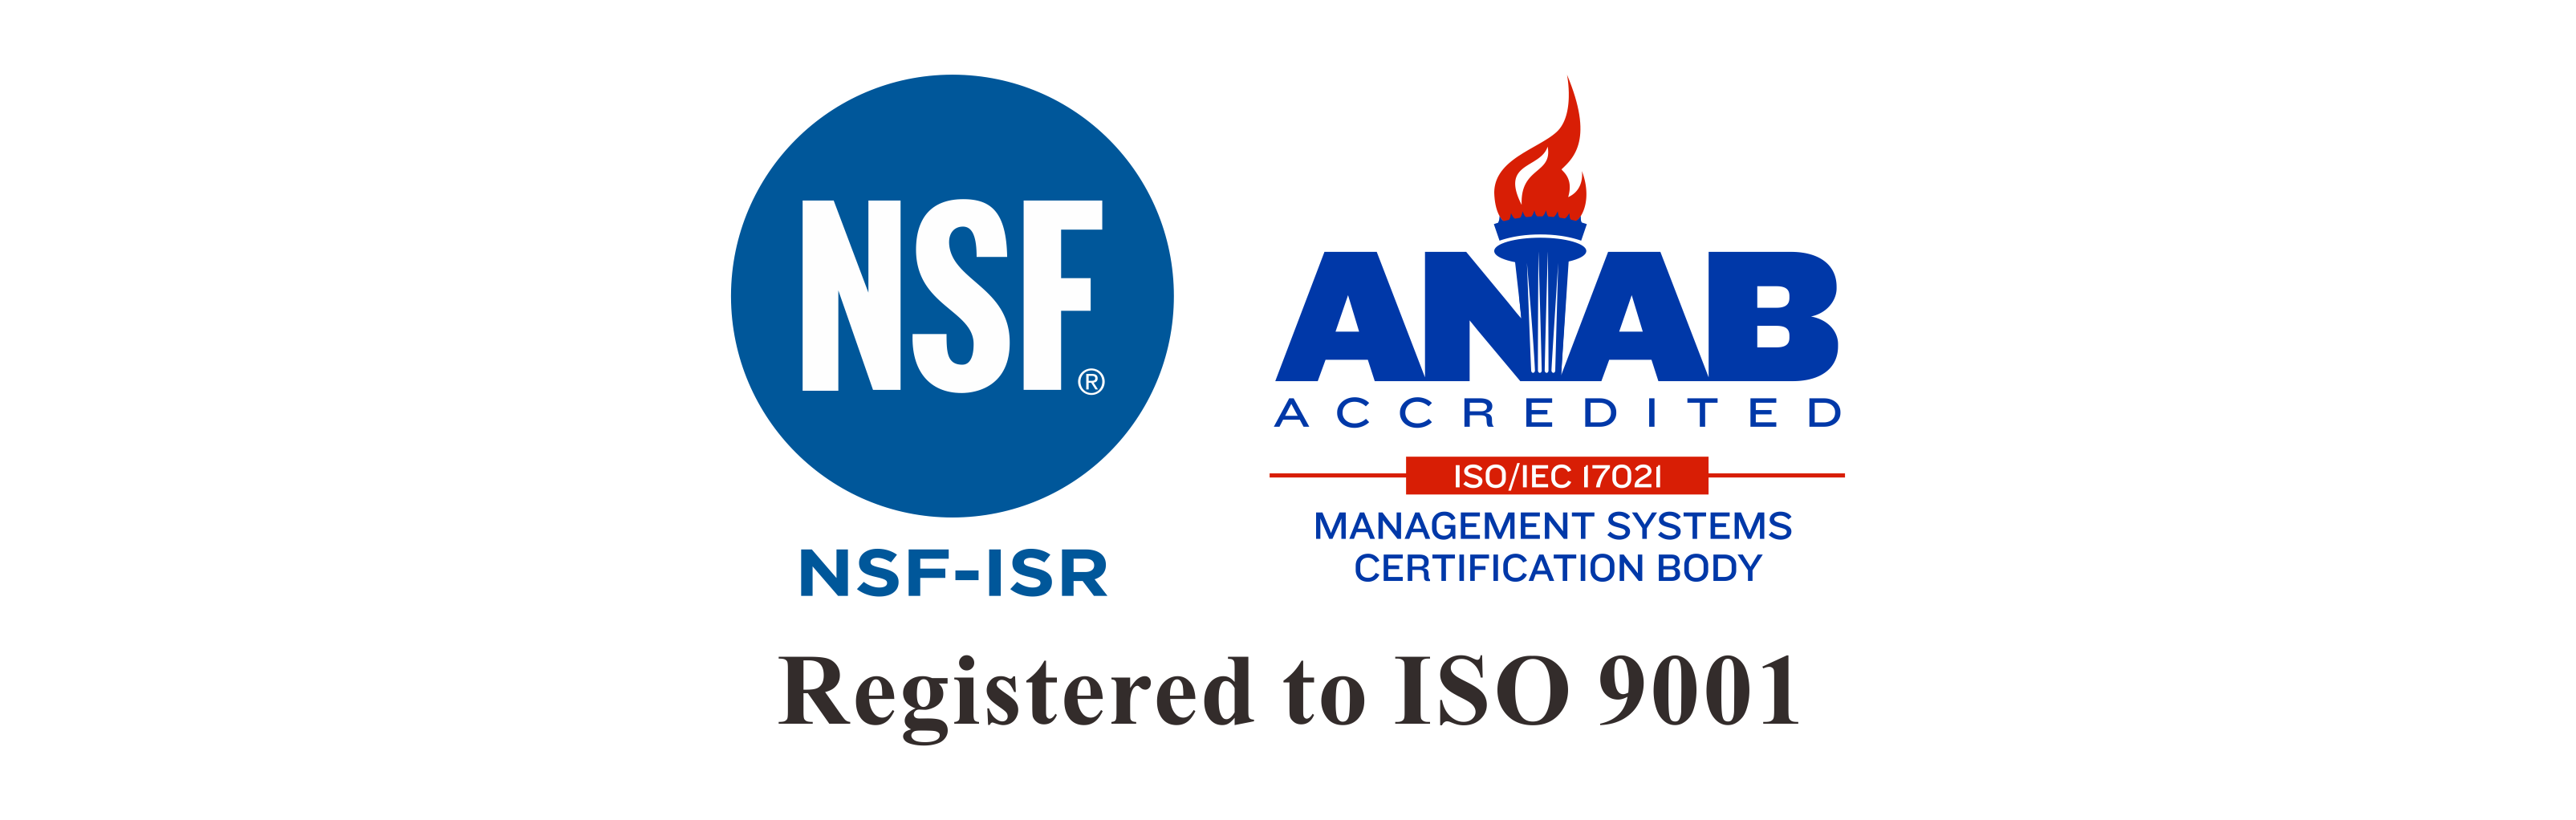 长新科技通过ISO 9001：2015改版审核认证